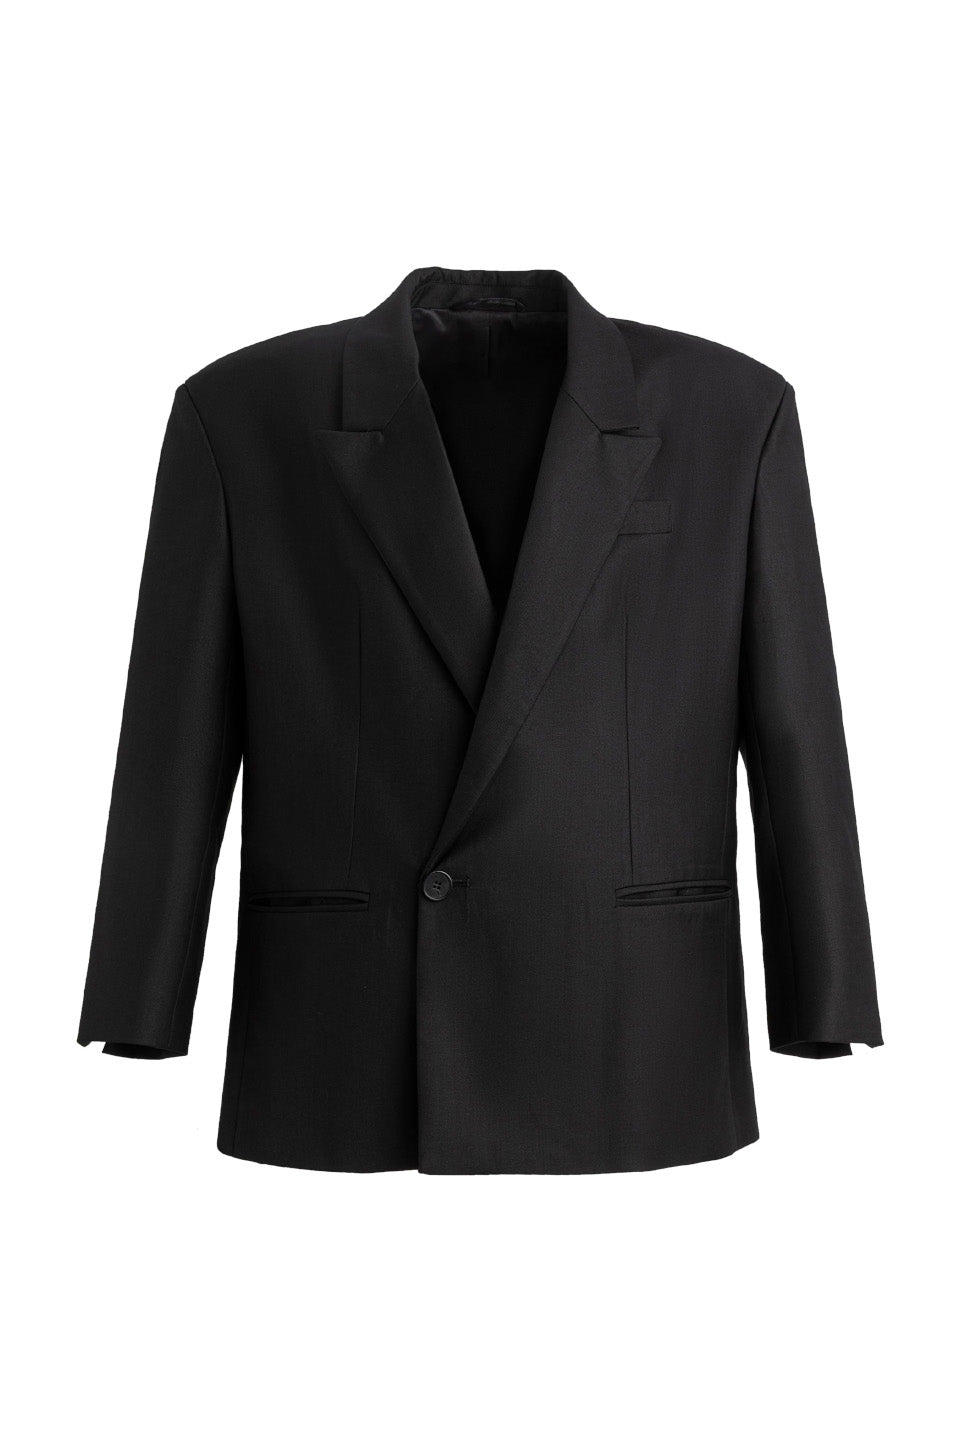 Profile Drape Suit Jacket - black / M